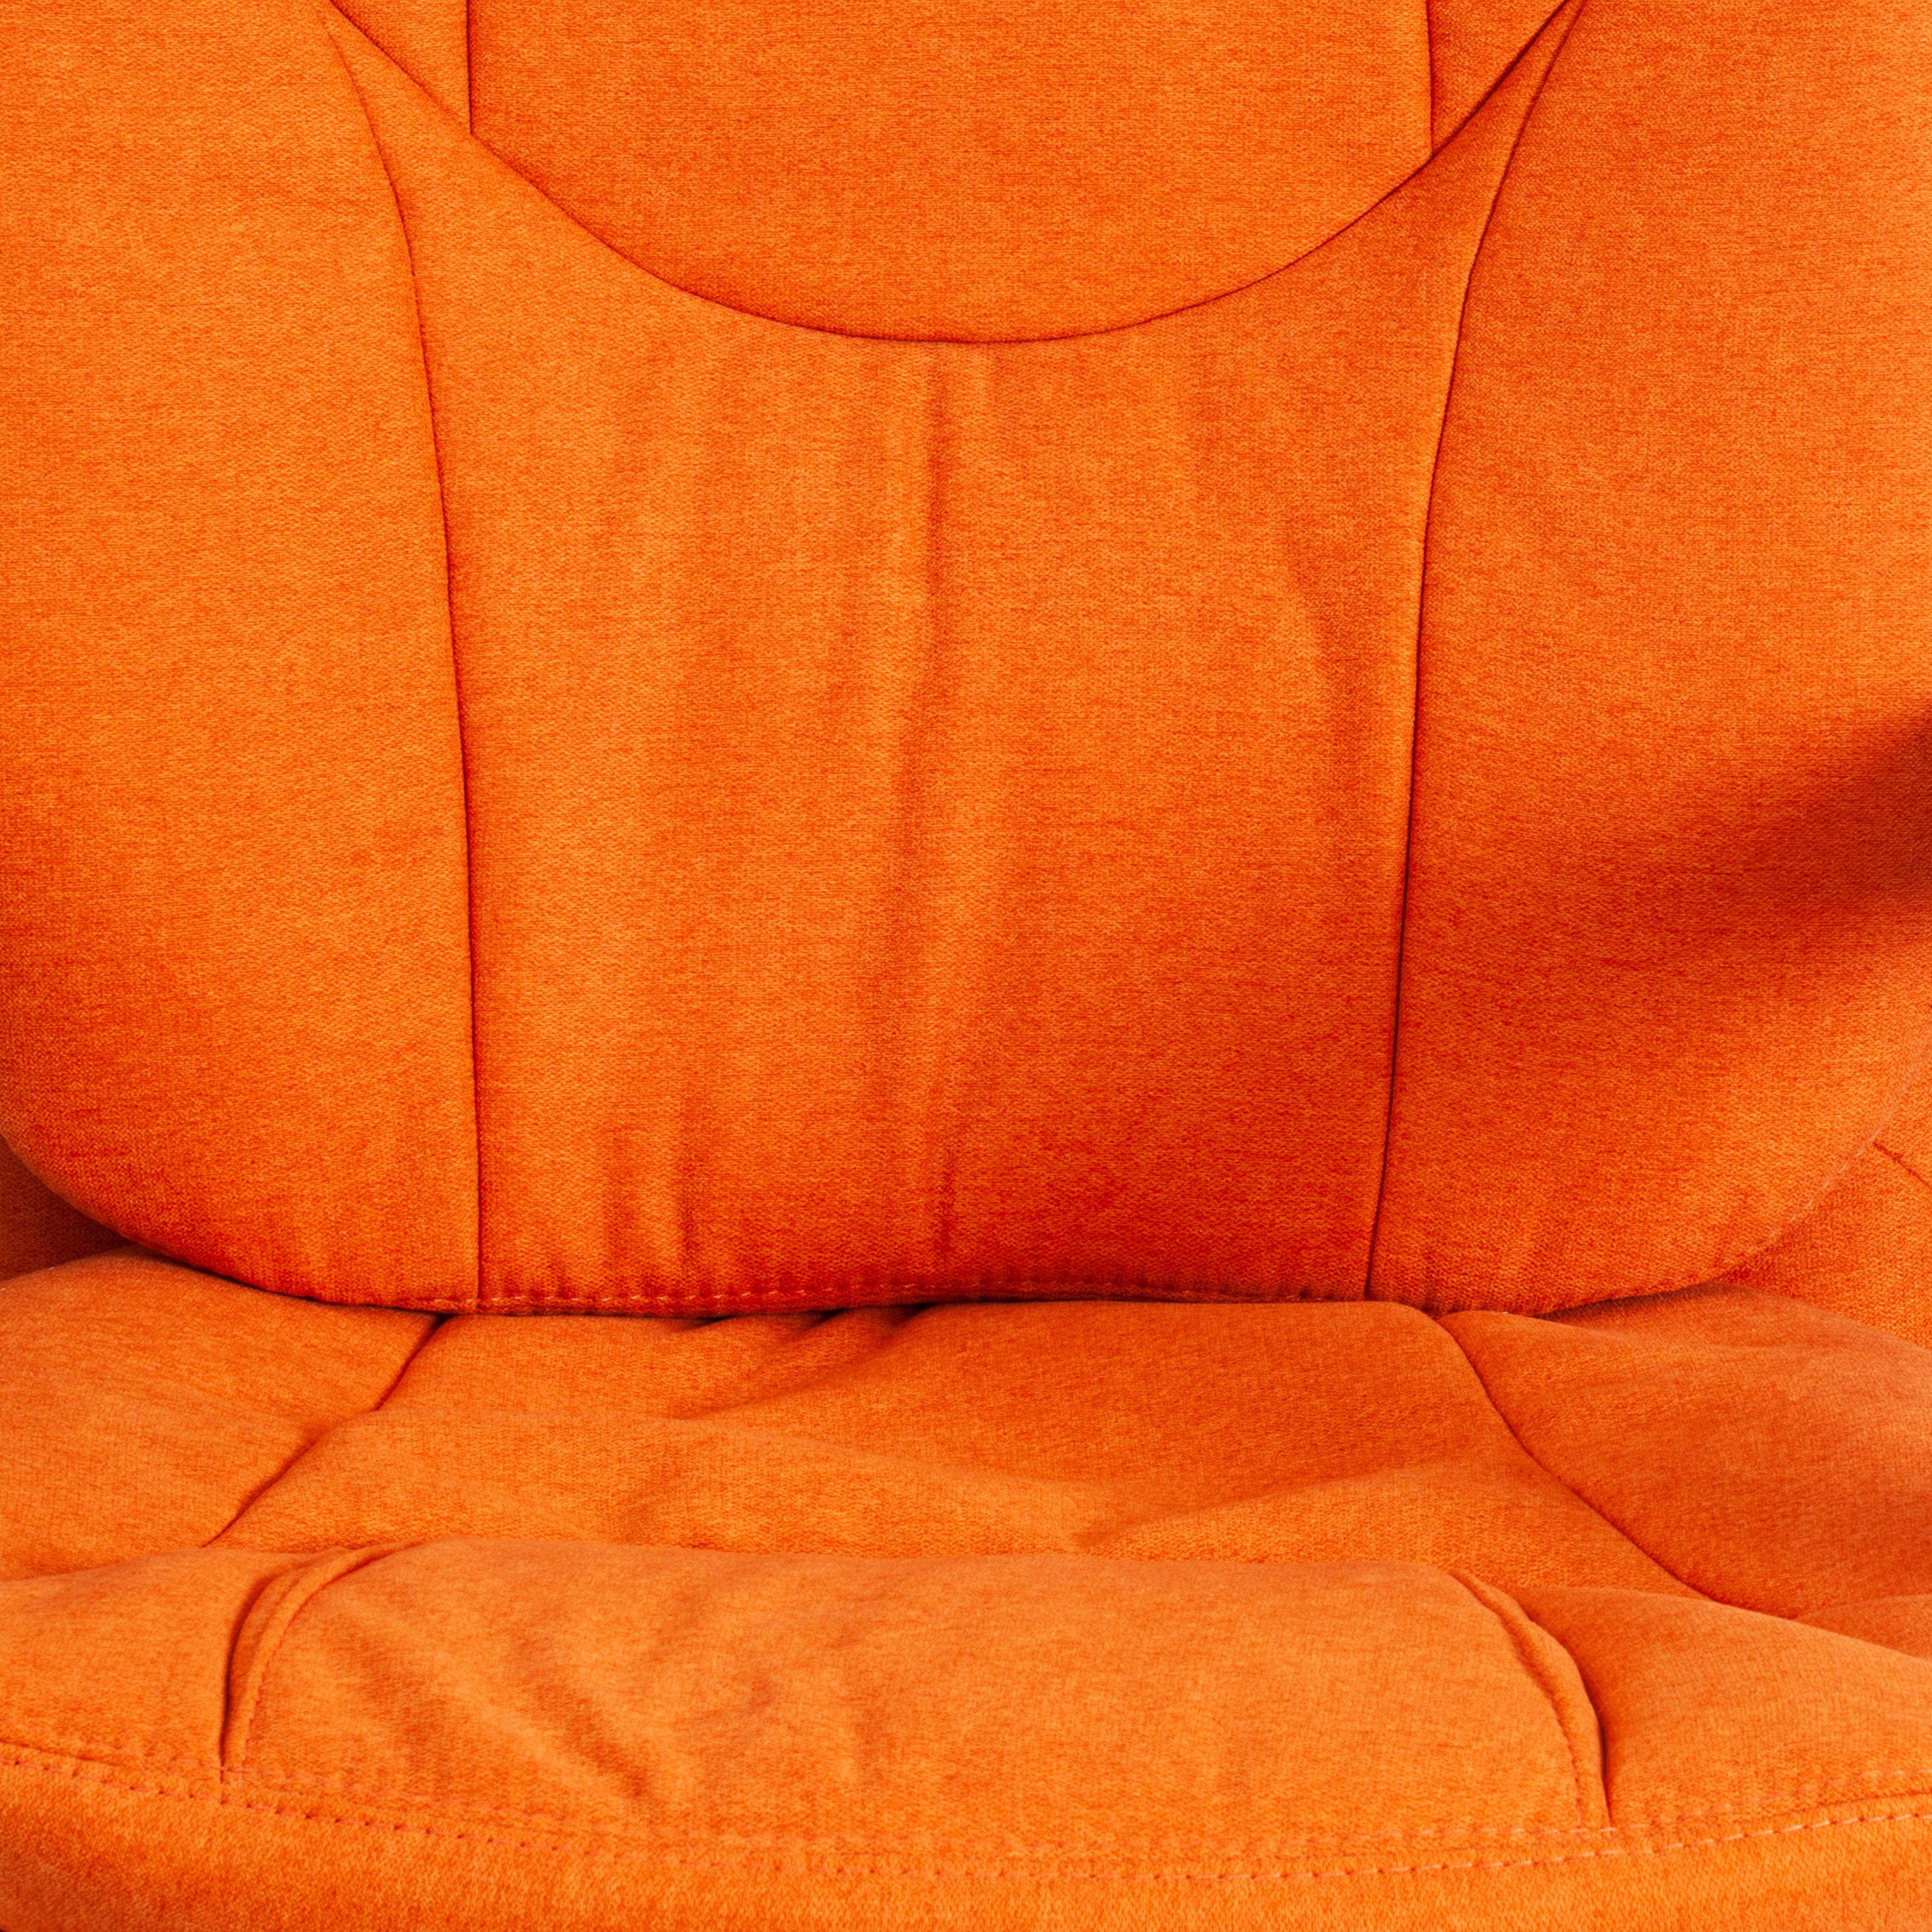 Кресло COMFORT LT (22) ткань scandi, оранжевый, 8